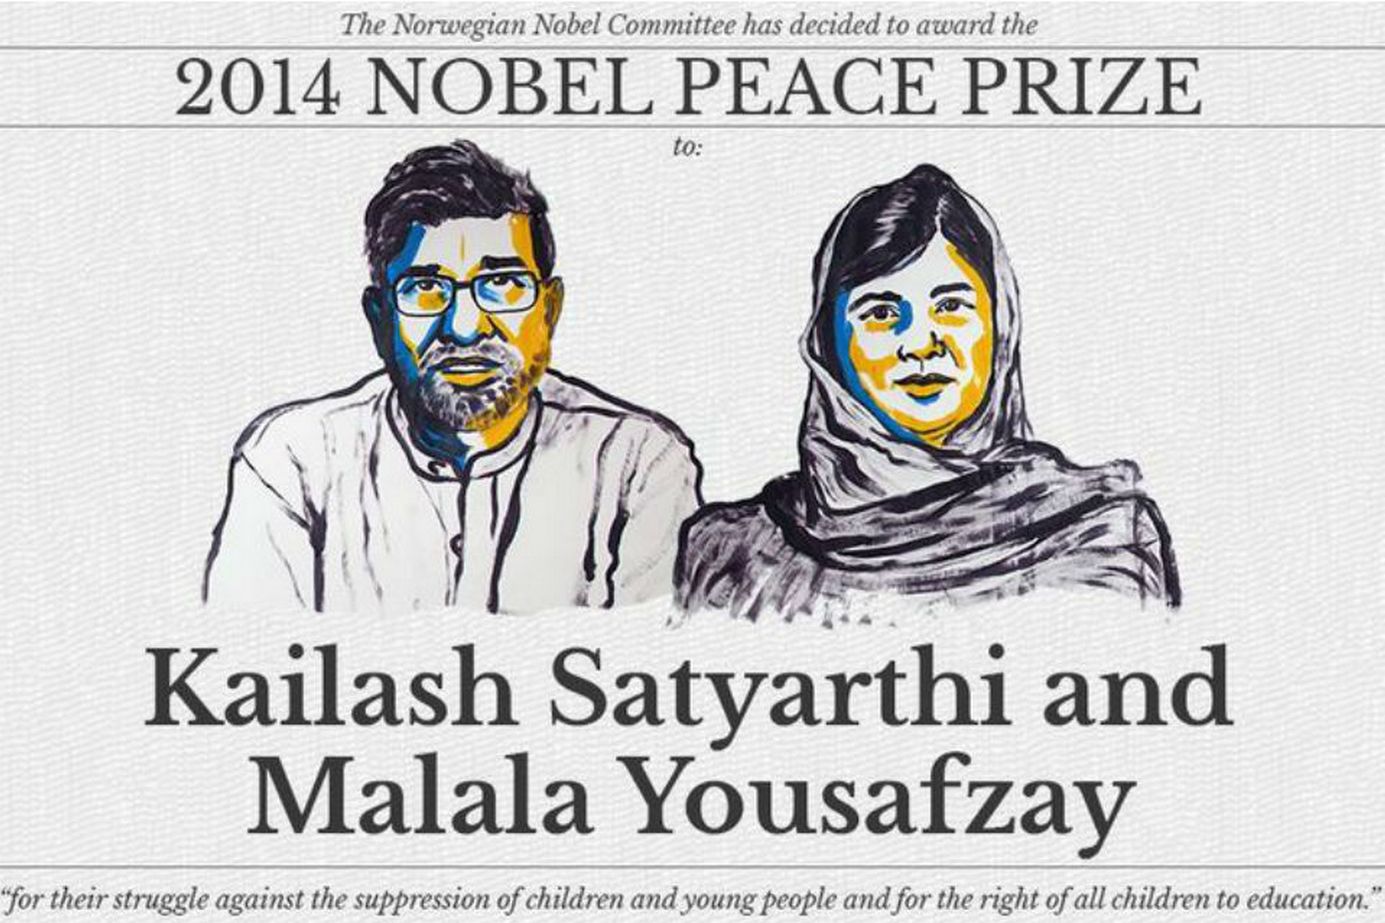 Así destacó el premio a los dos luchadores por la paz el portal web de los premios Nobel